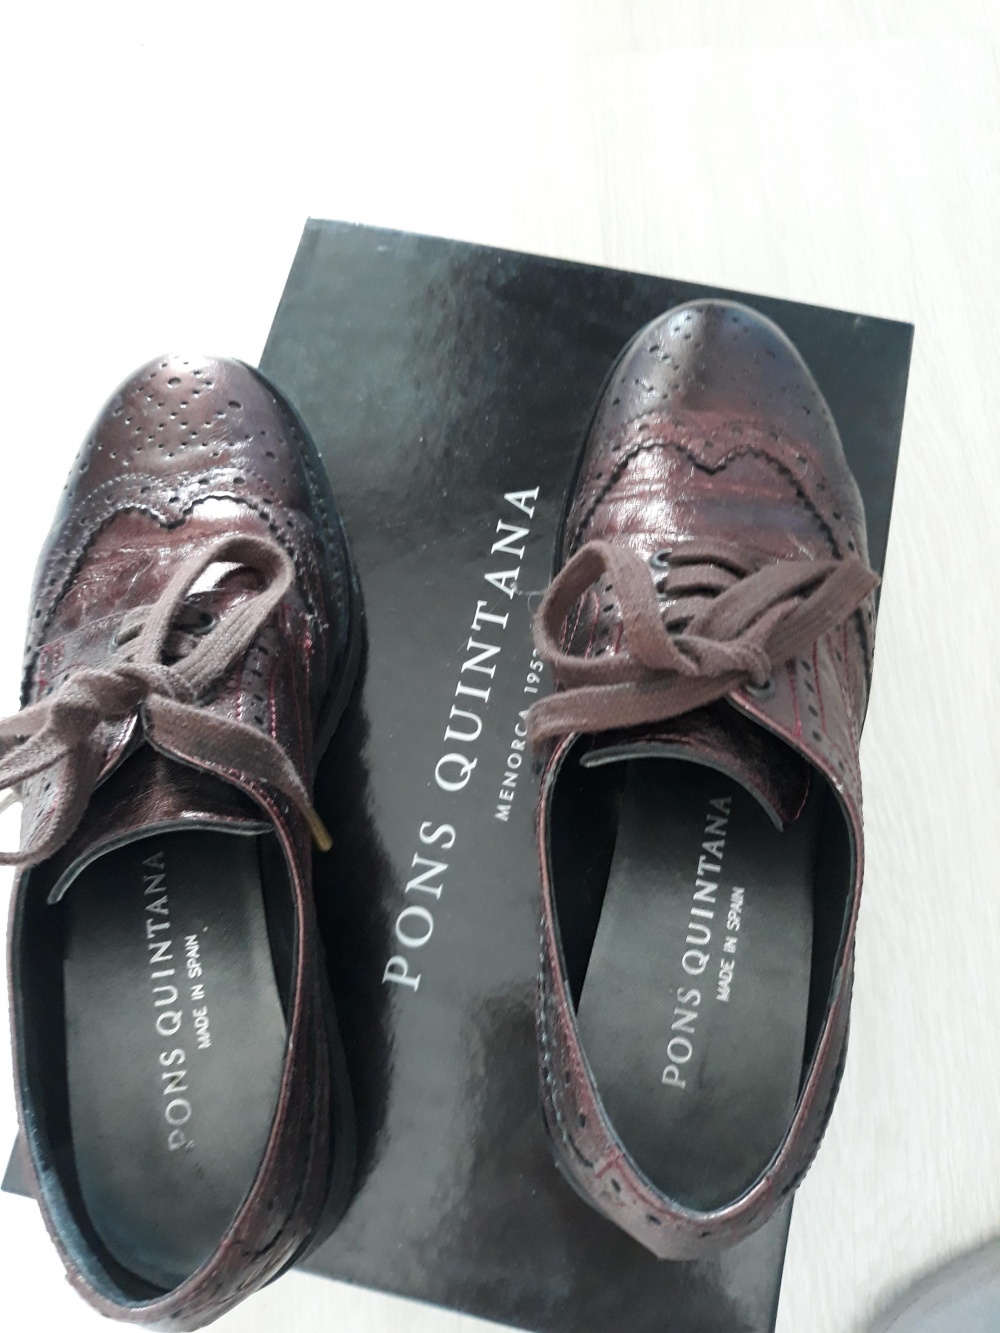 Ботинки Pons Quintana, 36 размер